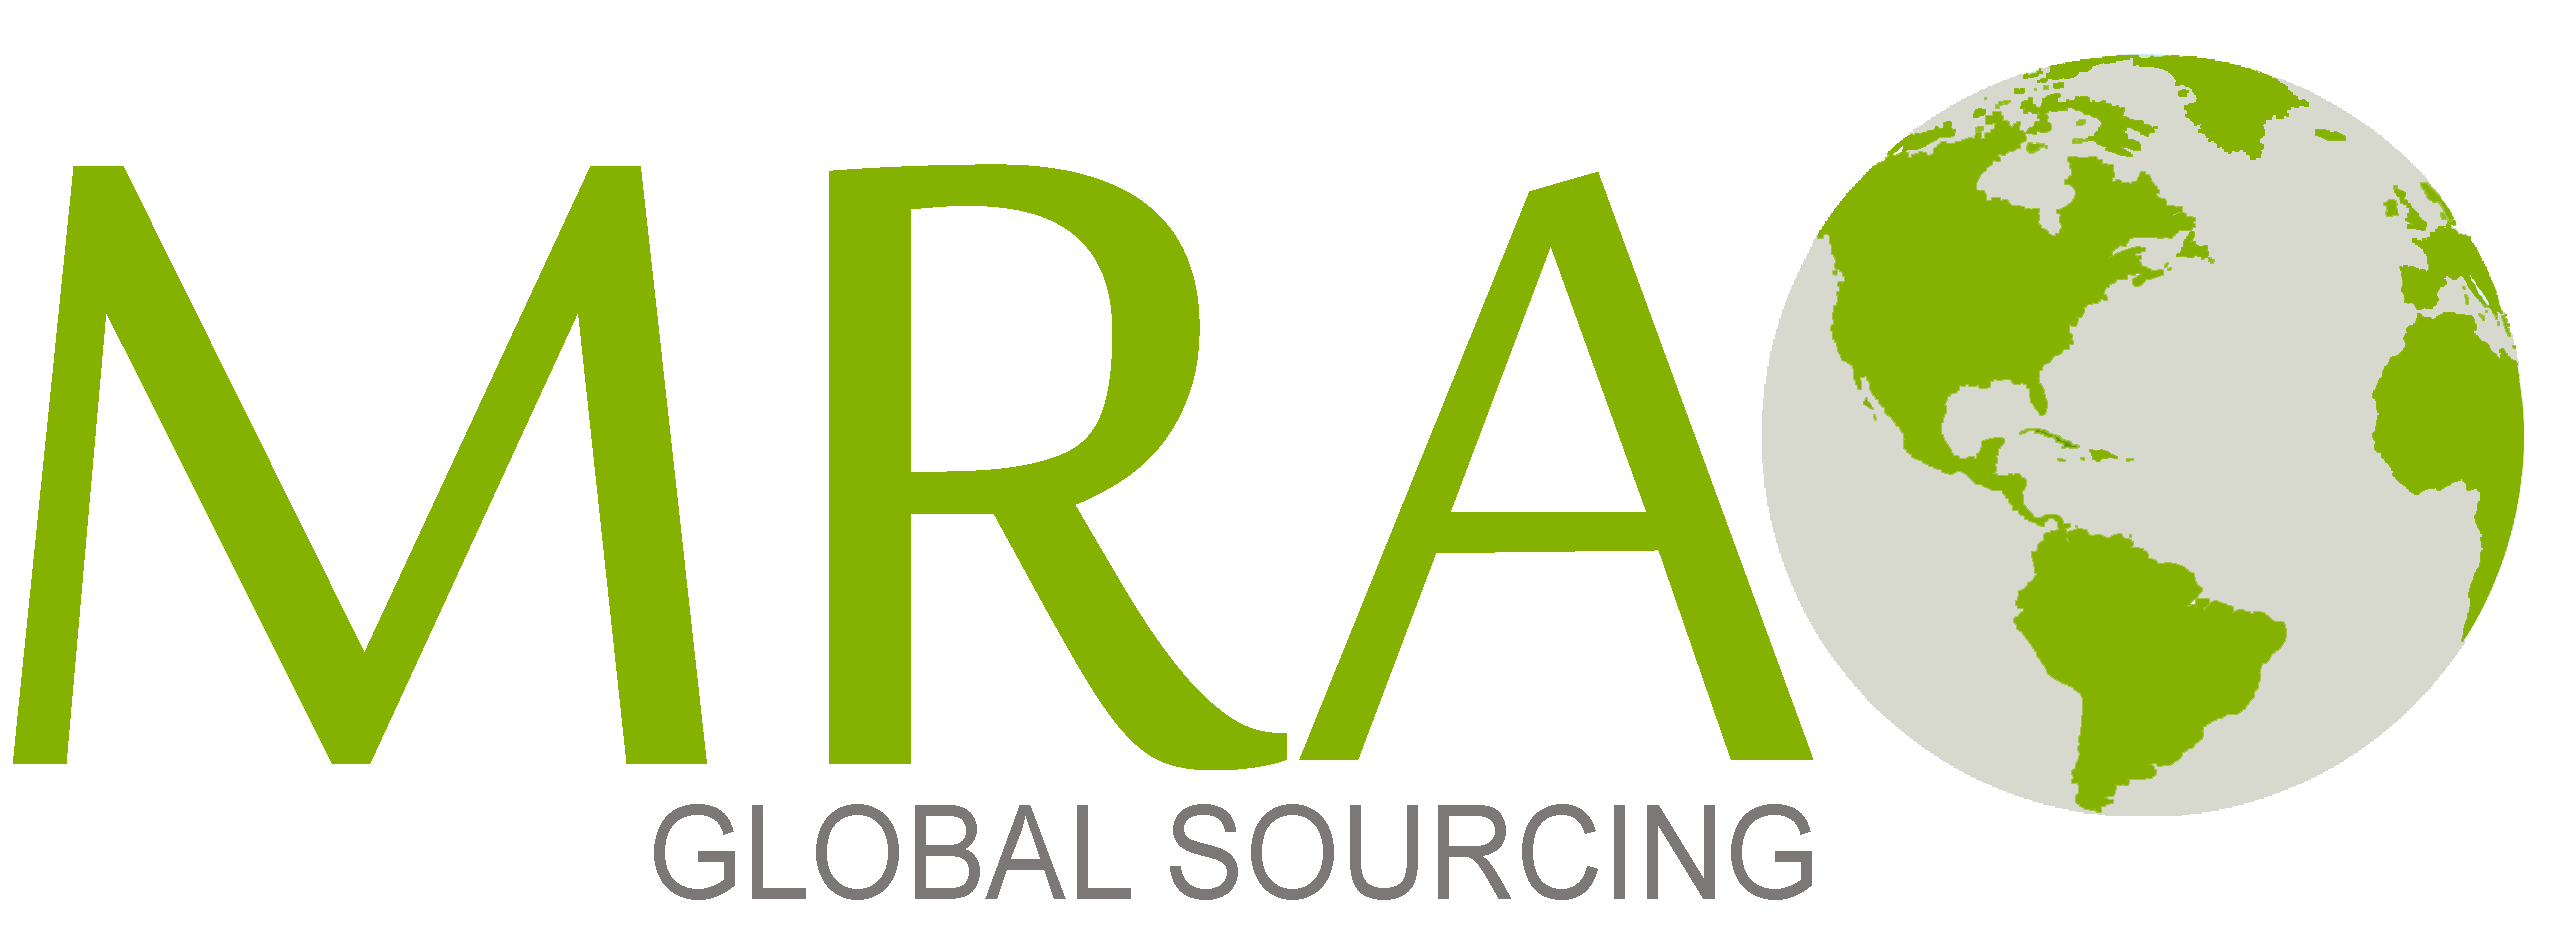 MRA Global Sourcing – Feedback Modifications